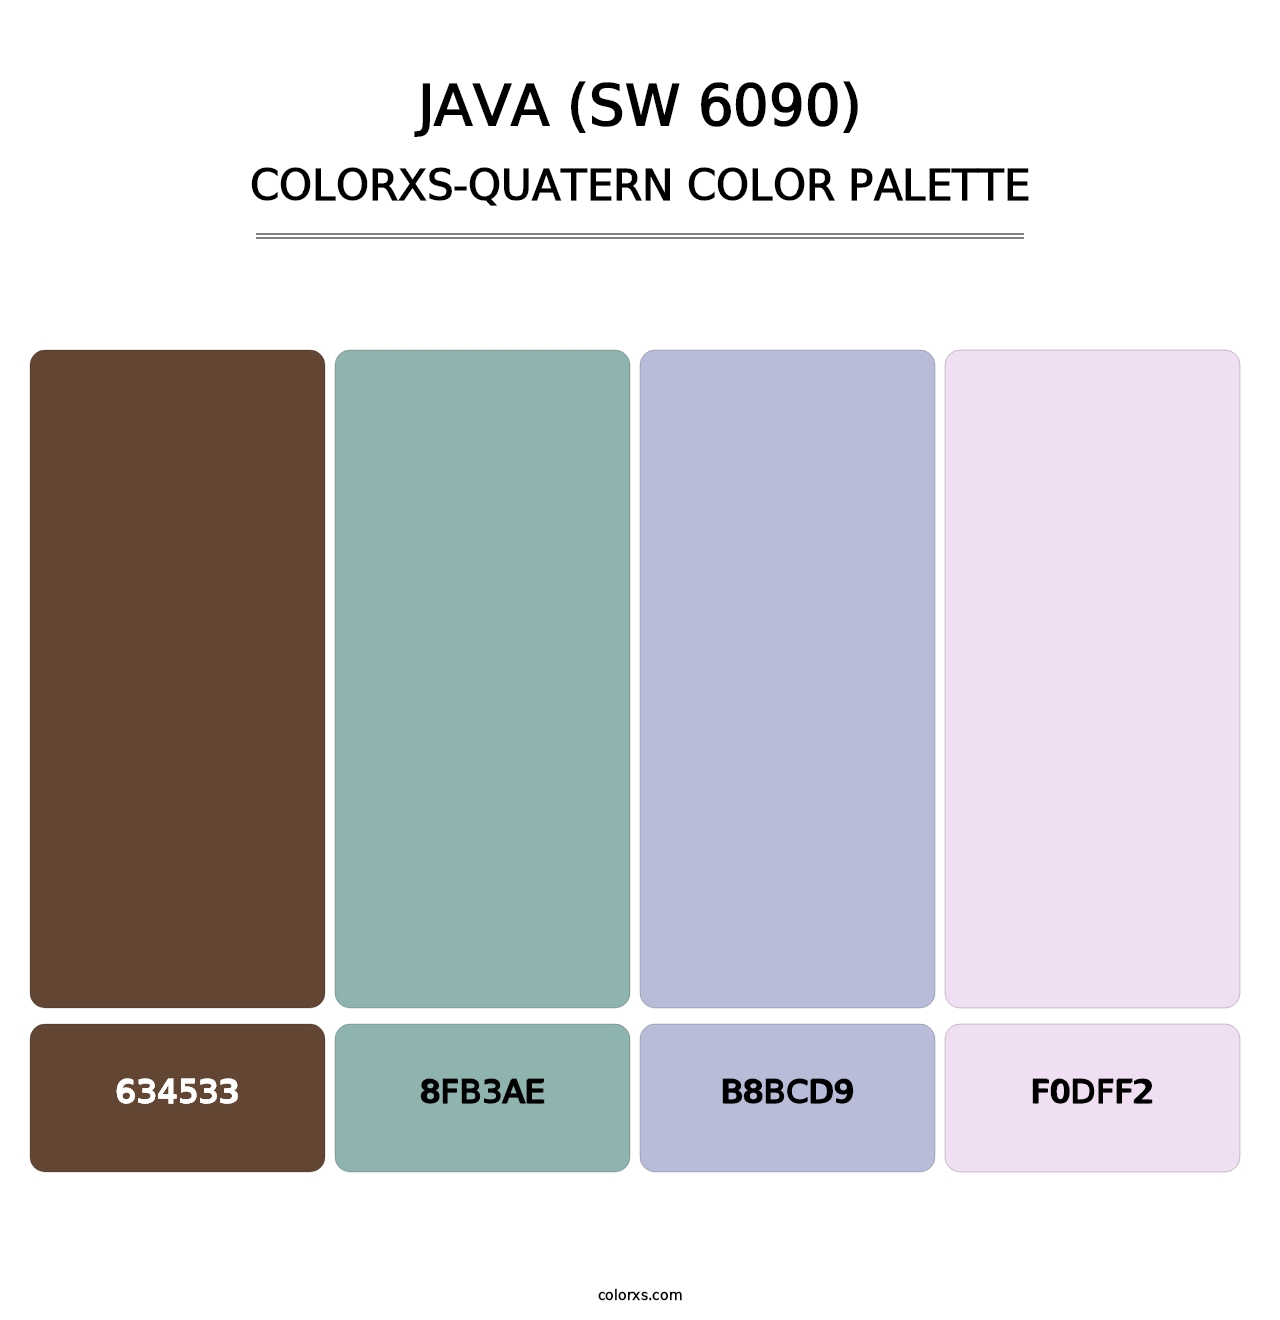 Java (SW 6090) - Colorxs Quatern Palette